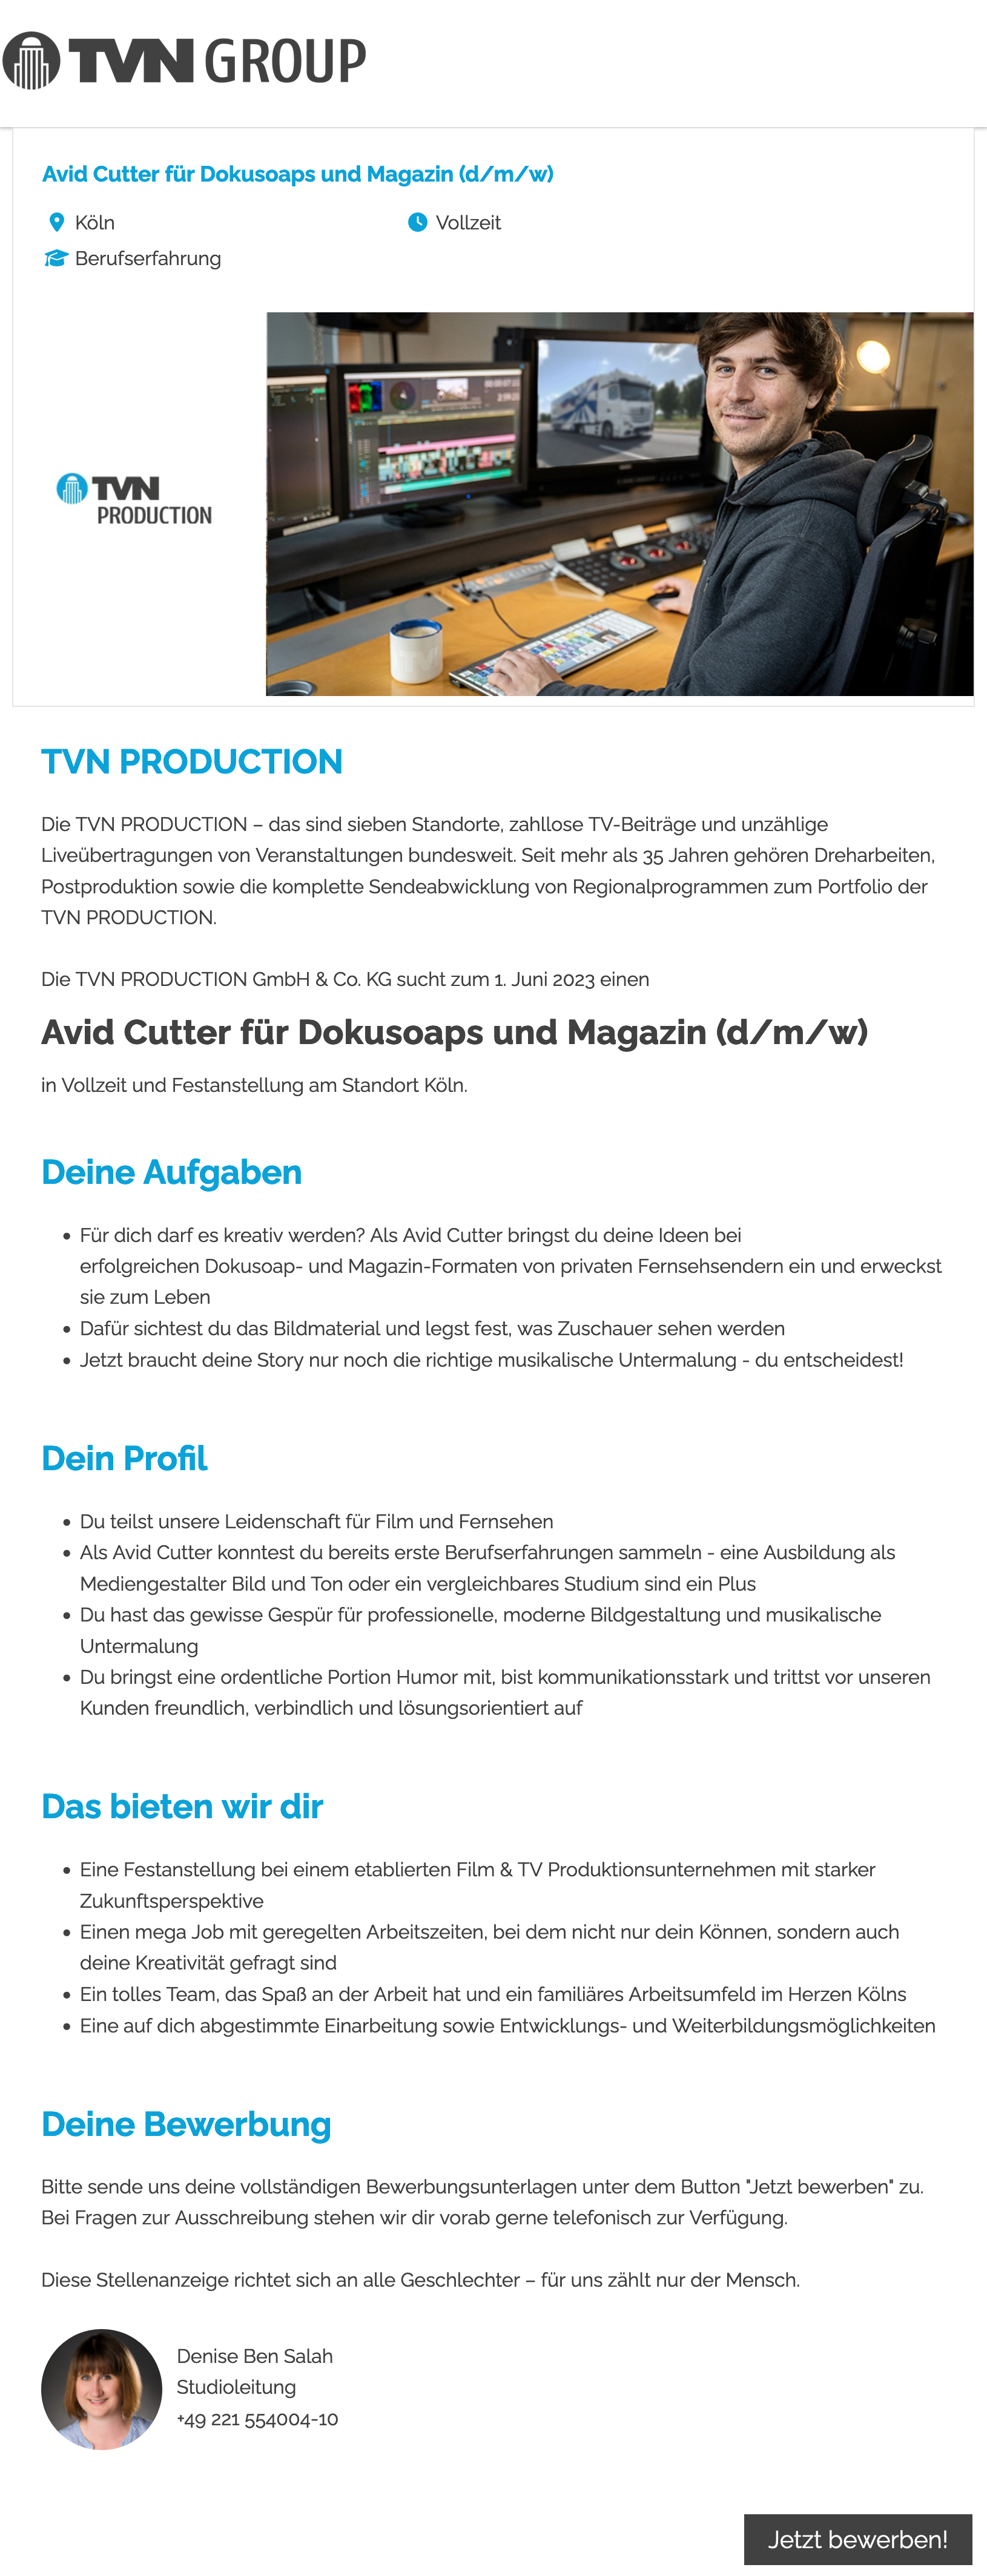 Avid Cutter für Dokusoaps und Magazin (d/m/w)